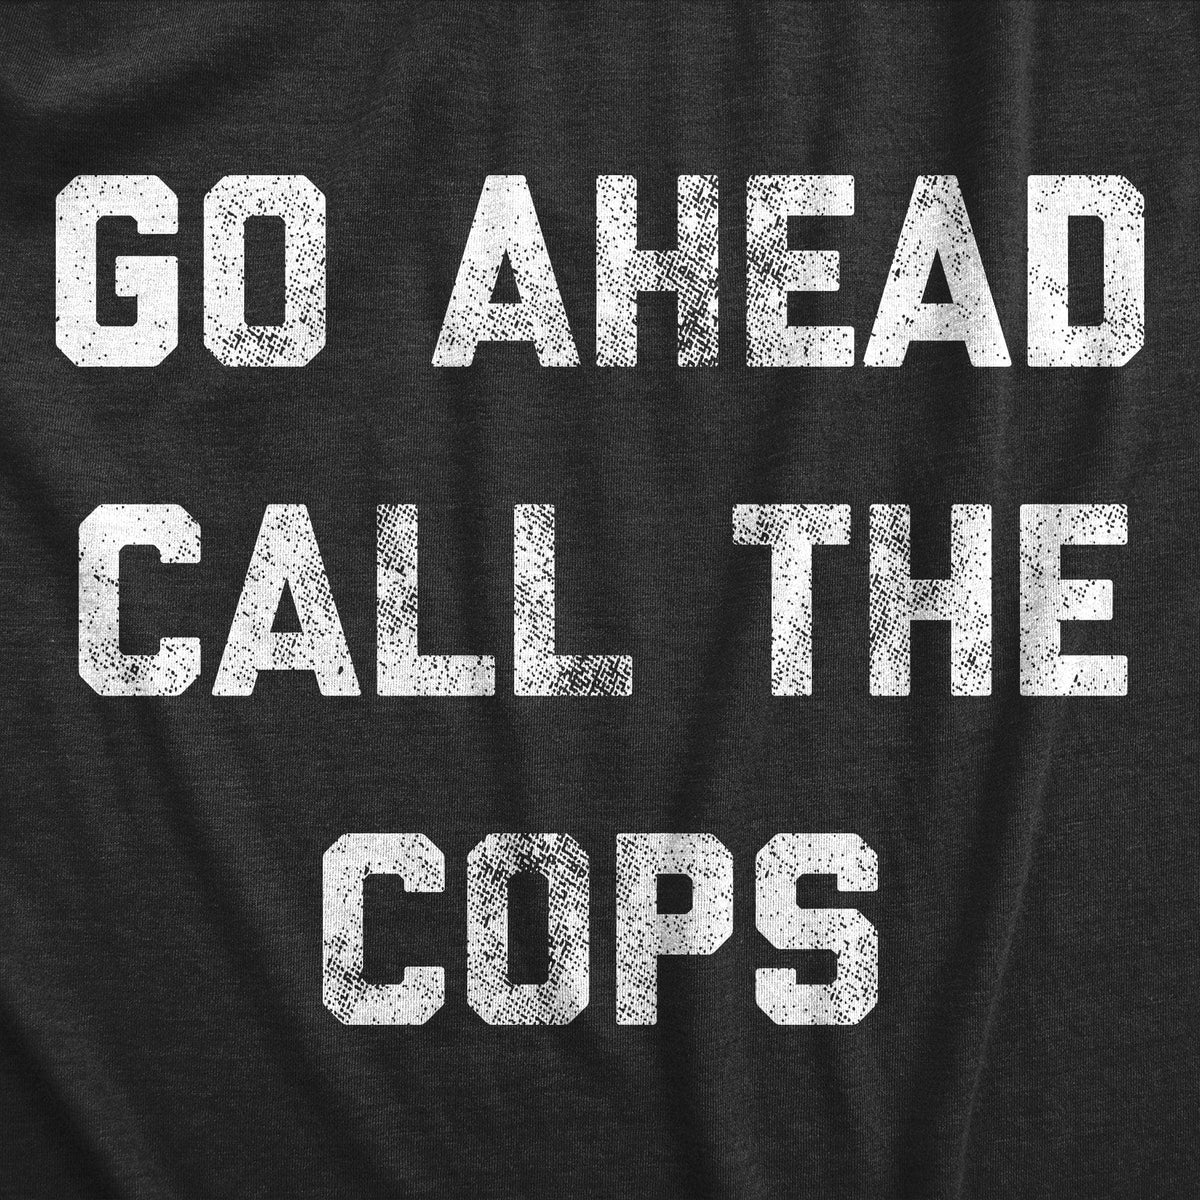 Go Ahead Call The Cops Men&#39;s Tshirt  -  Crazy Dog T-Shirts